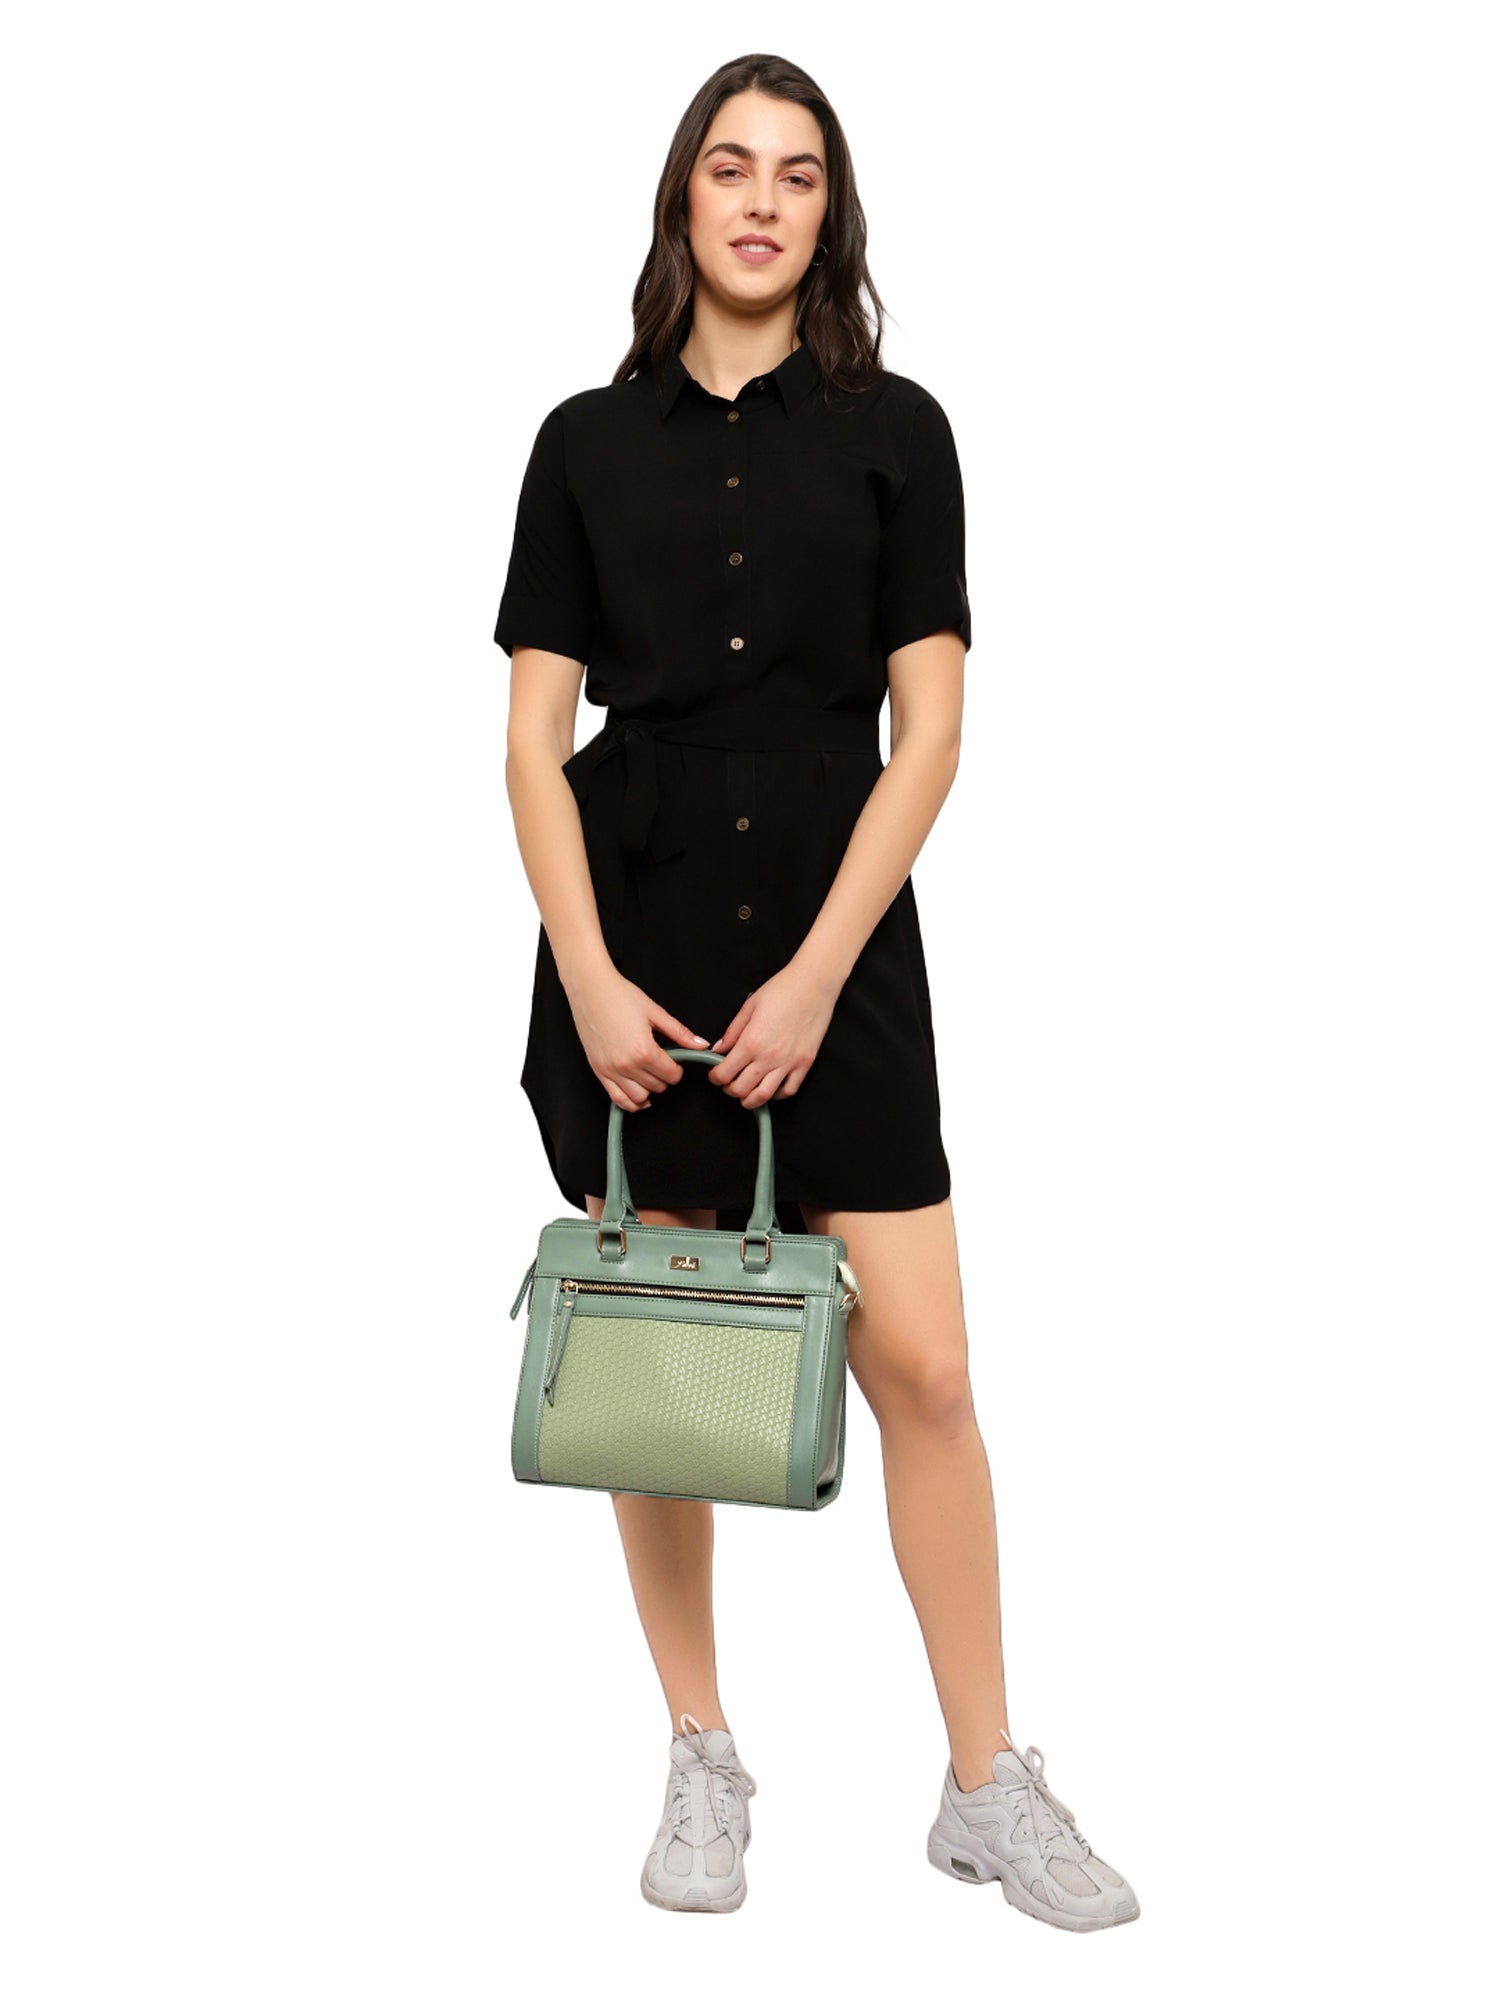 Green Color Interweave Handbag